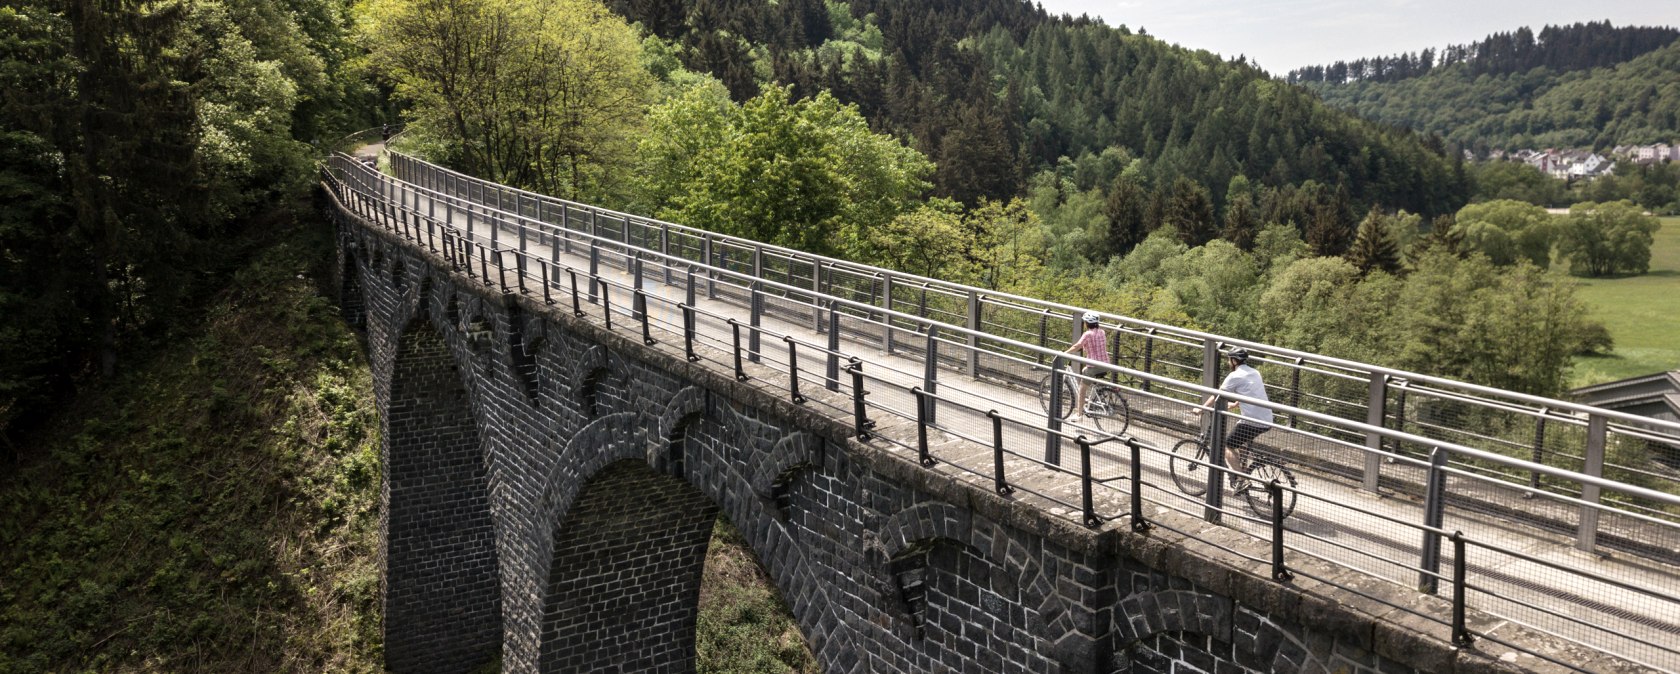 Radtour über Viadukt bei Daun am Maare-Mosel-Radweg, © Eifel Tourismus GmbH, D. Ketz